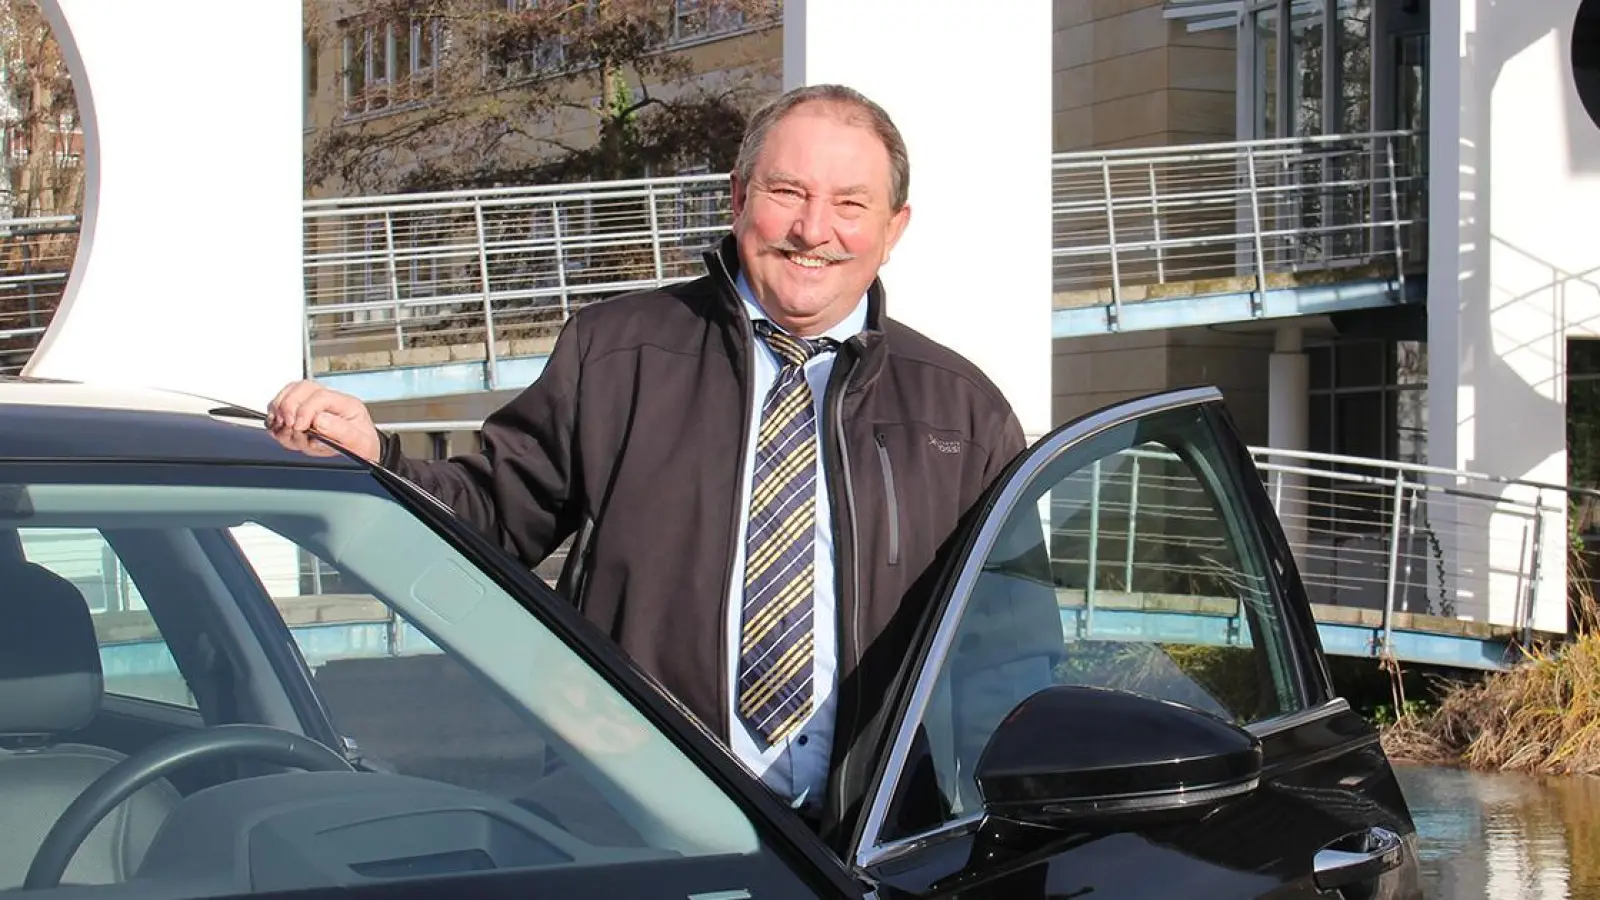 Peter Hübner ist nach 36 Jahren als Fahrer des Landrats im Landkreis Bayreuth in den Ruhestand gegangen. Bild: Landratsamt Bayreuth (Foto: Landratsamt Bayreuth)